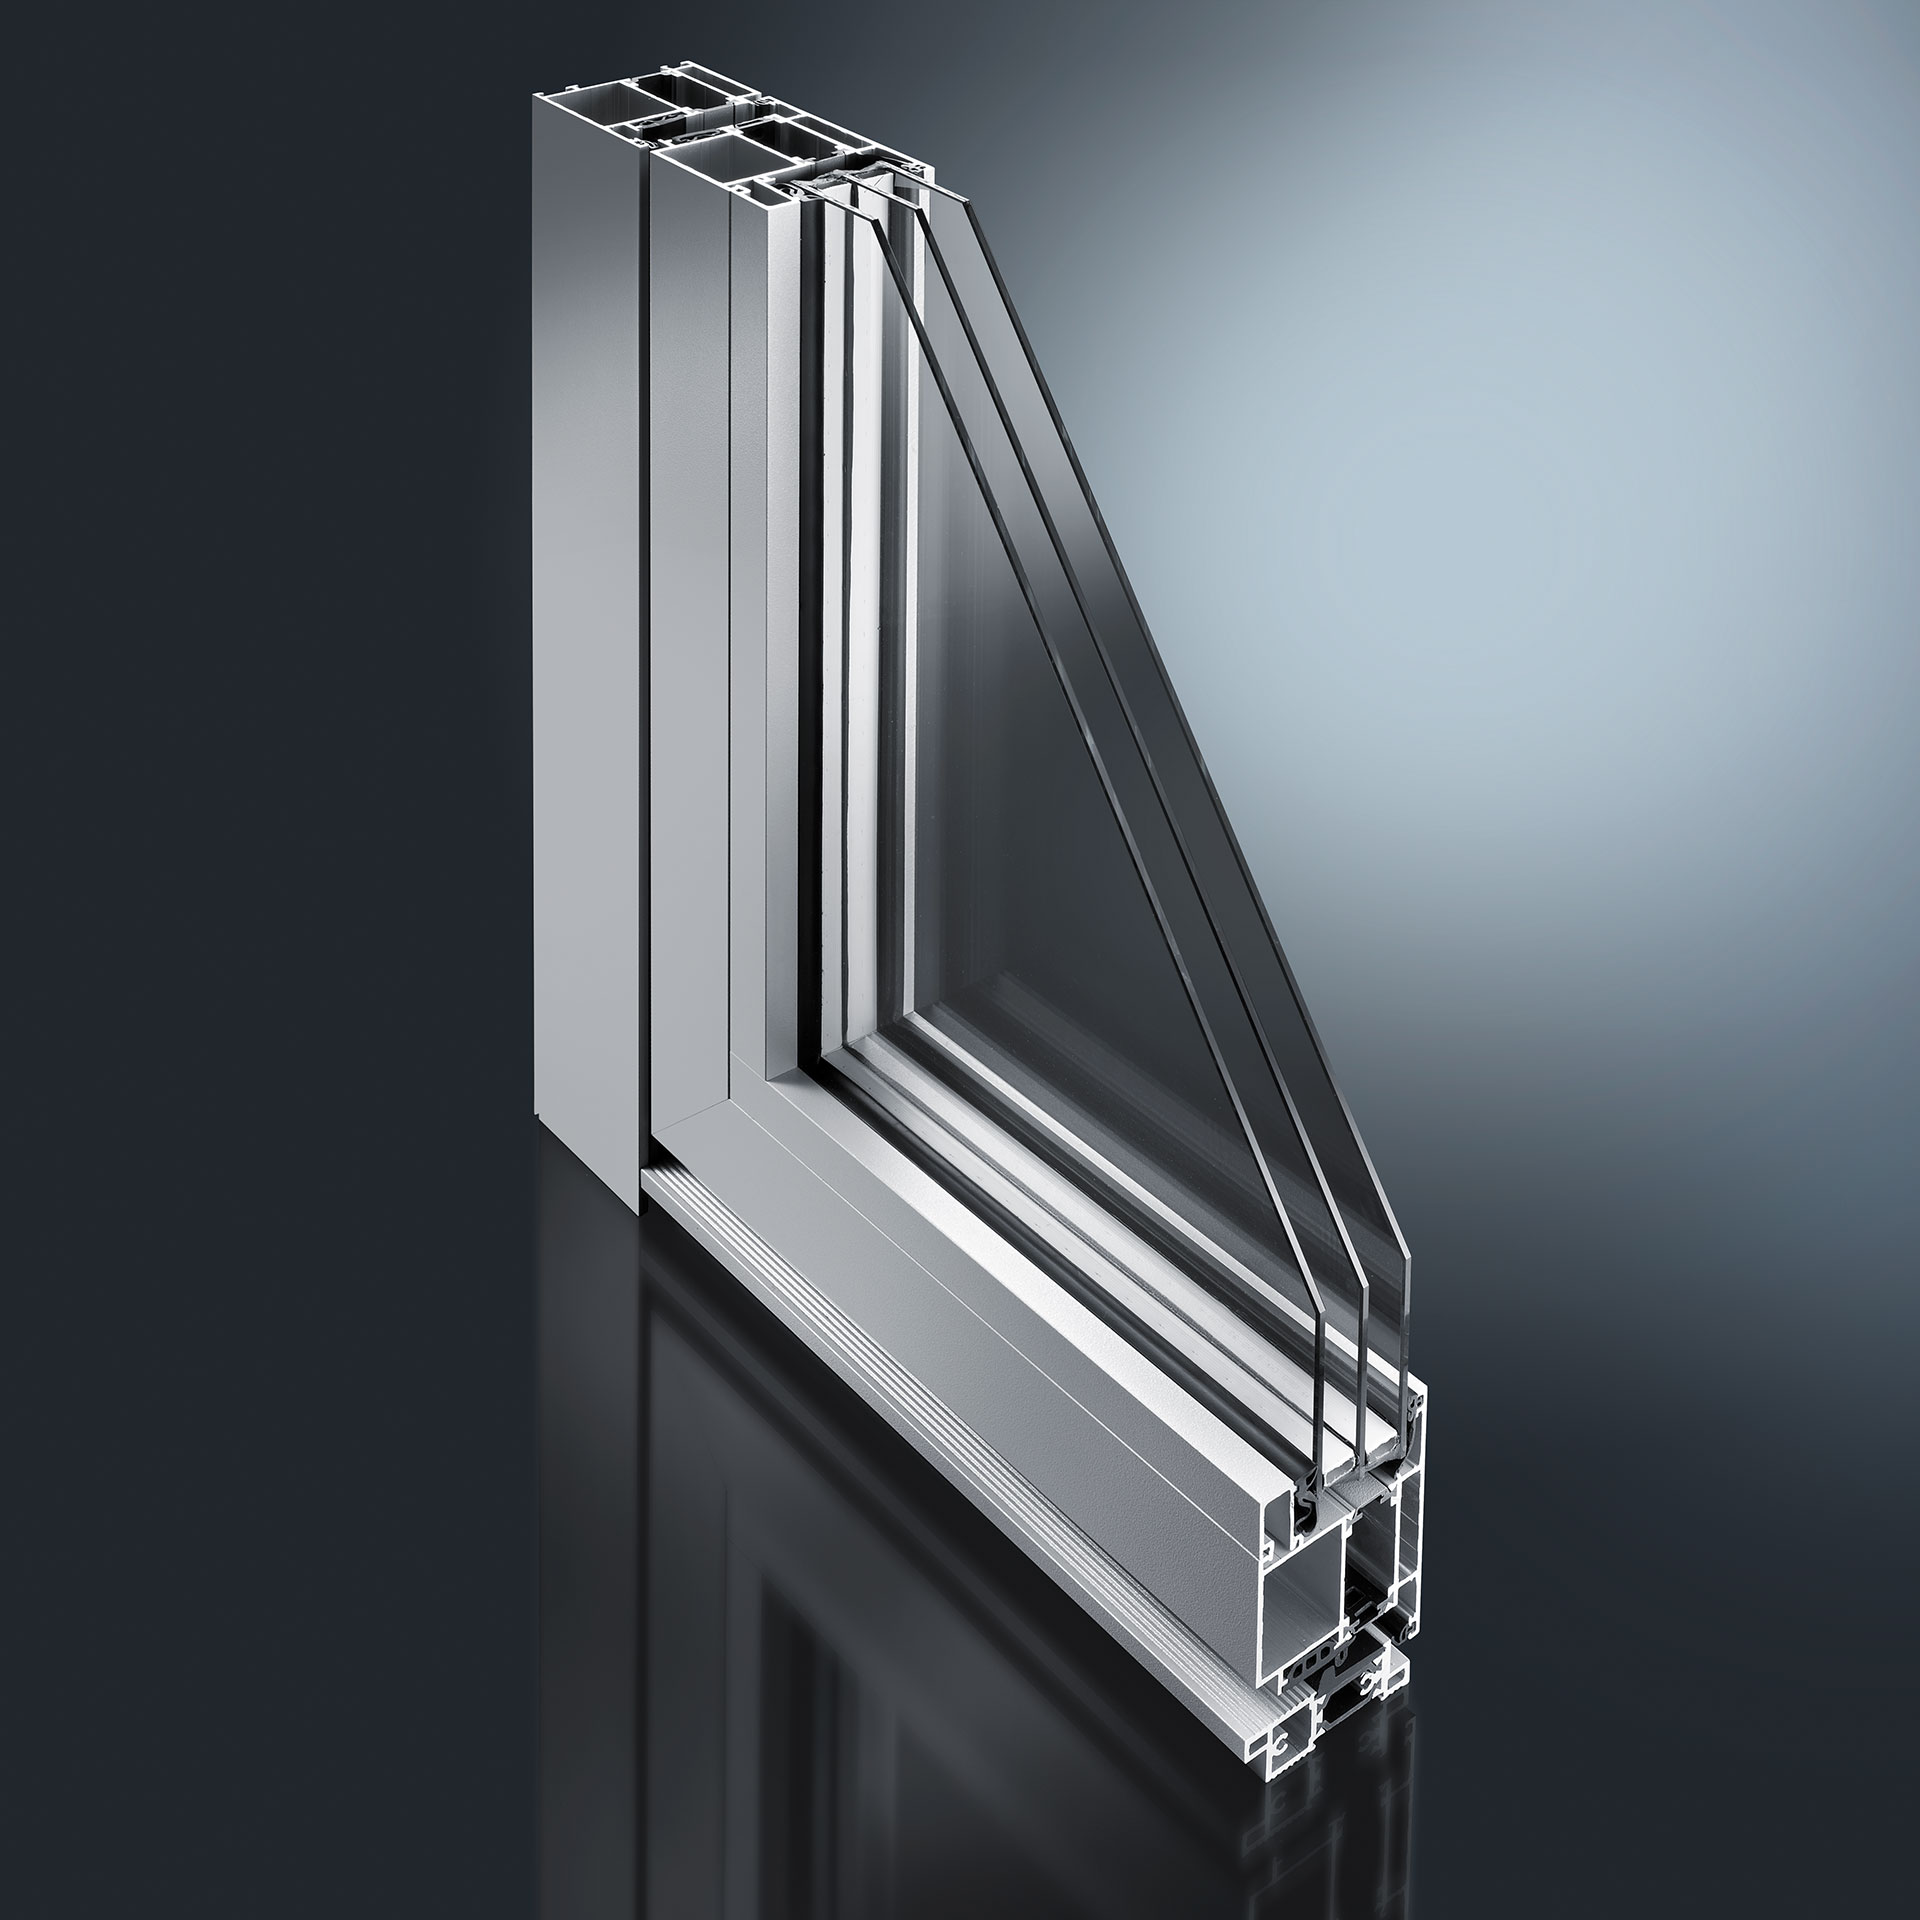 Systemy profili do drzwi wejściowych i drzwi - oferujemy zarówno aluminiowe okładziny do drzwi drewnianych, jak i nowoczesne standardowe modele wykonane z aluminium, a także systemy profili do ścianek działowych i elementów ściennych, również we wnętrzach.